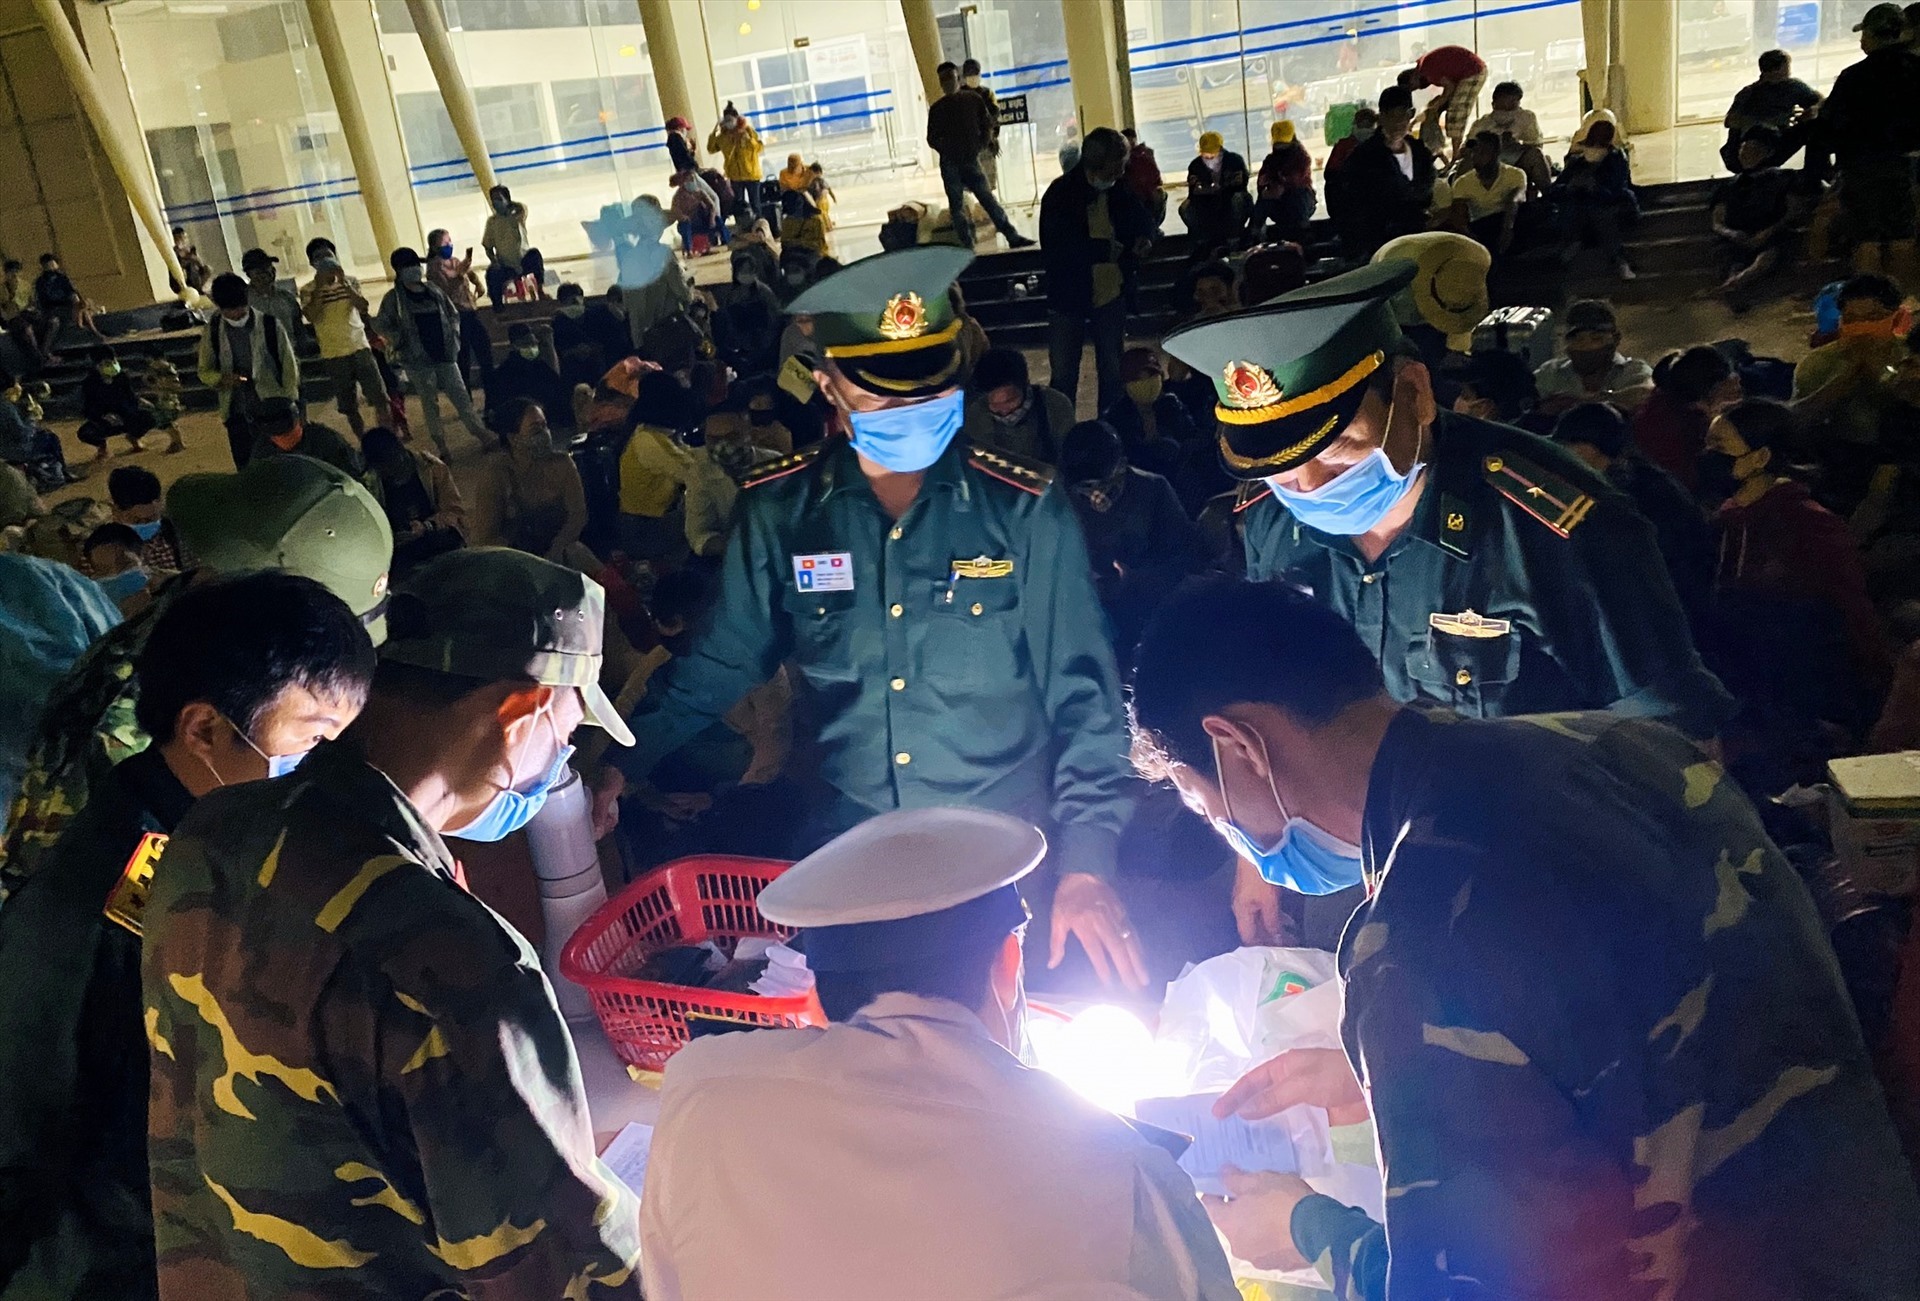 Làm việc từ 7h sáng, nhưng đến hơn nửa đêm các lực lượng ở Cửa khẩu Quốc tế Lao Bảo vẫn phải chong đèn làm việc, đợi người dân được đưa về các khu cách ly tập trung mới hoàn thành công việc.